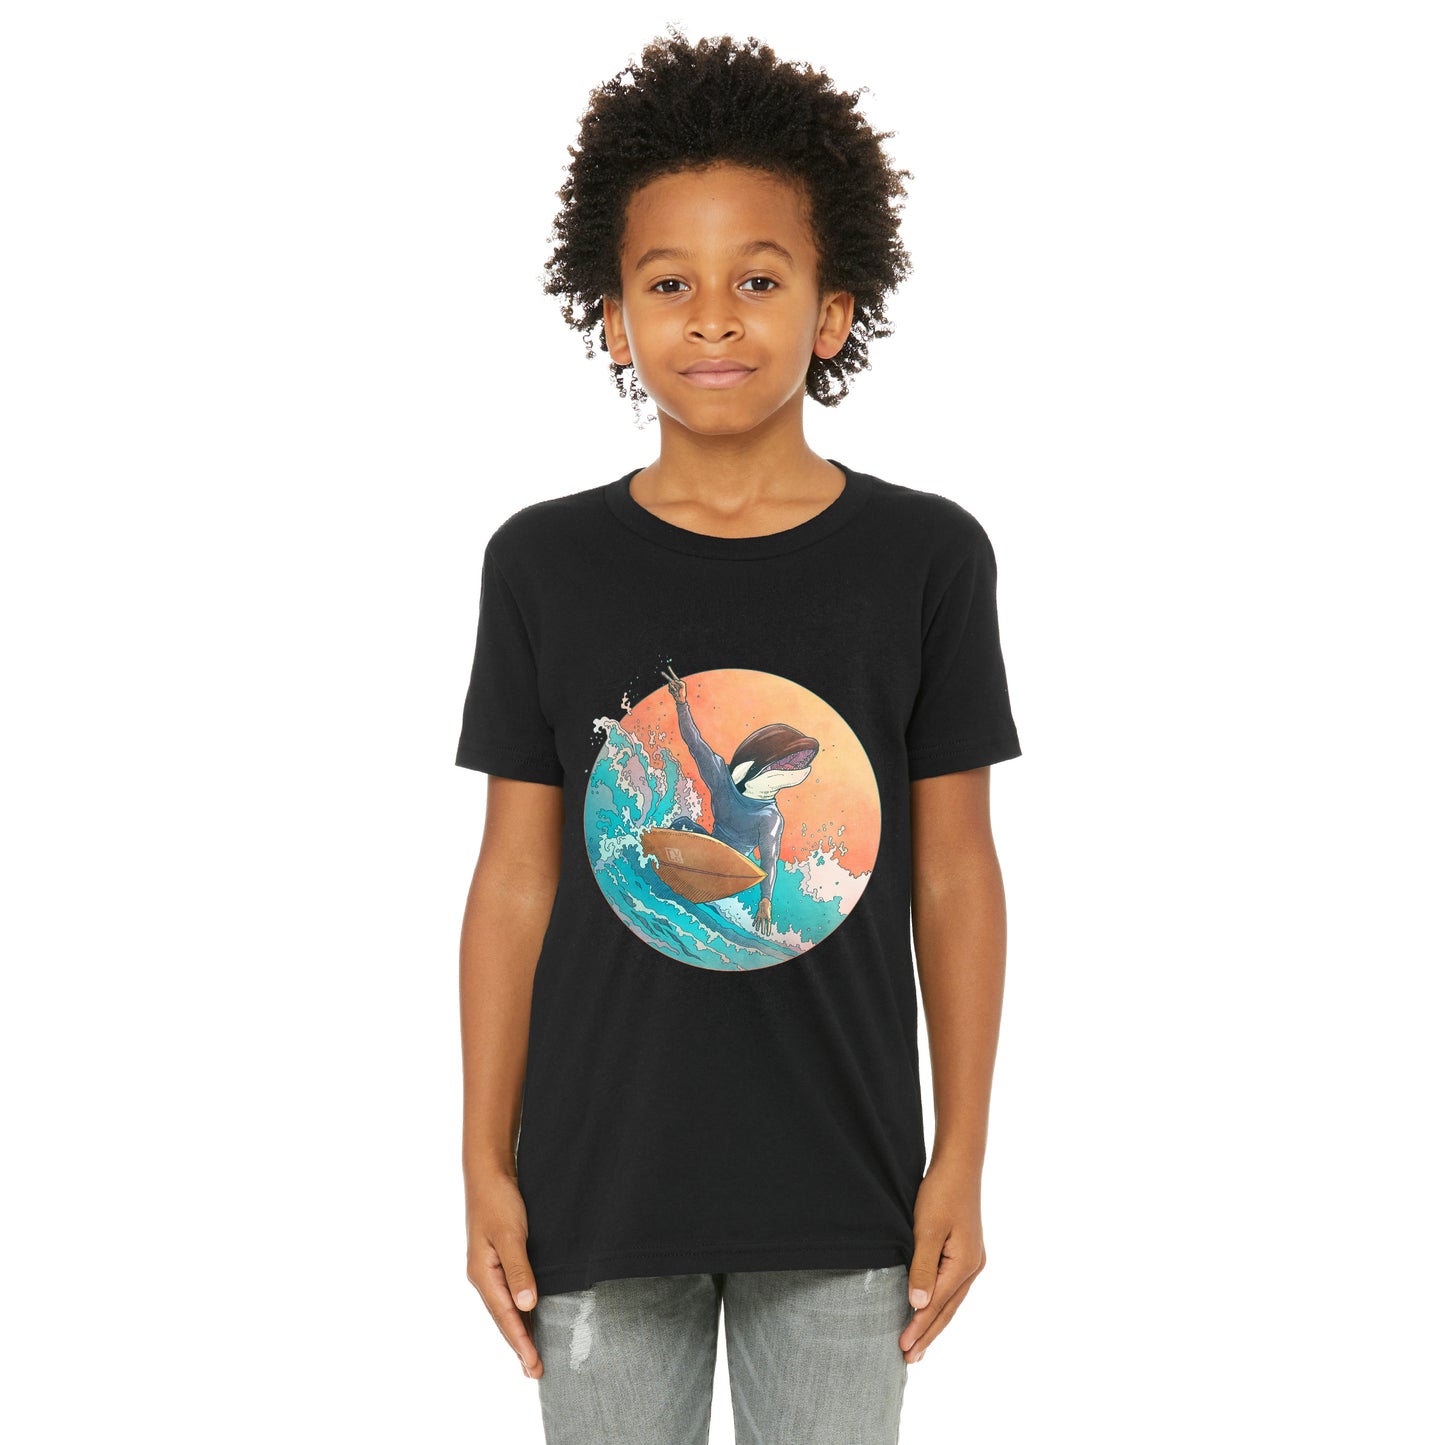 T-shirt enfant unisexe : Dan surfeur